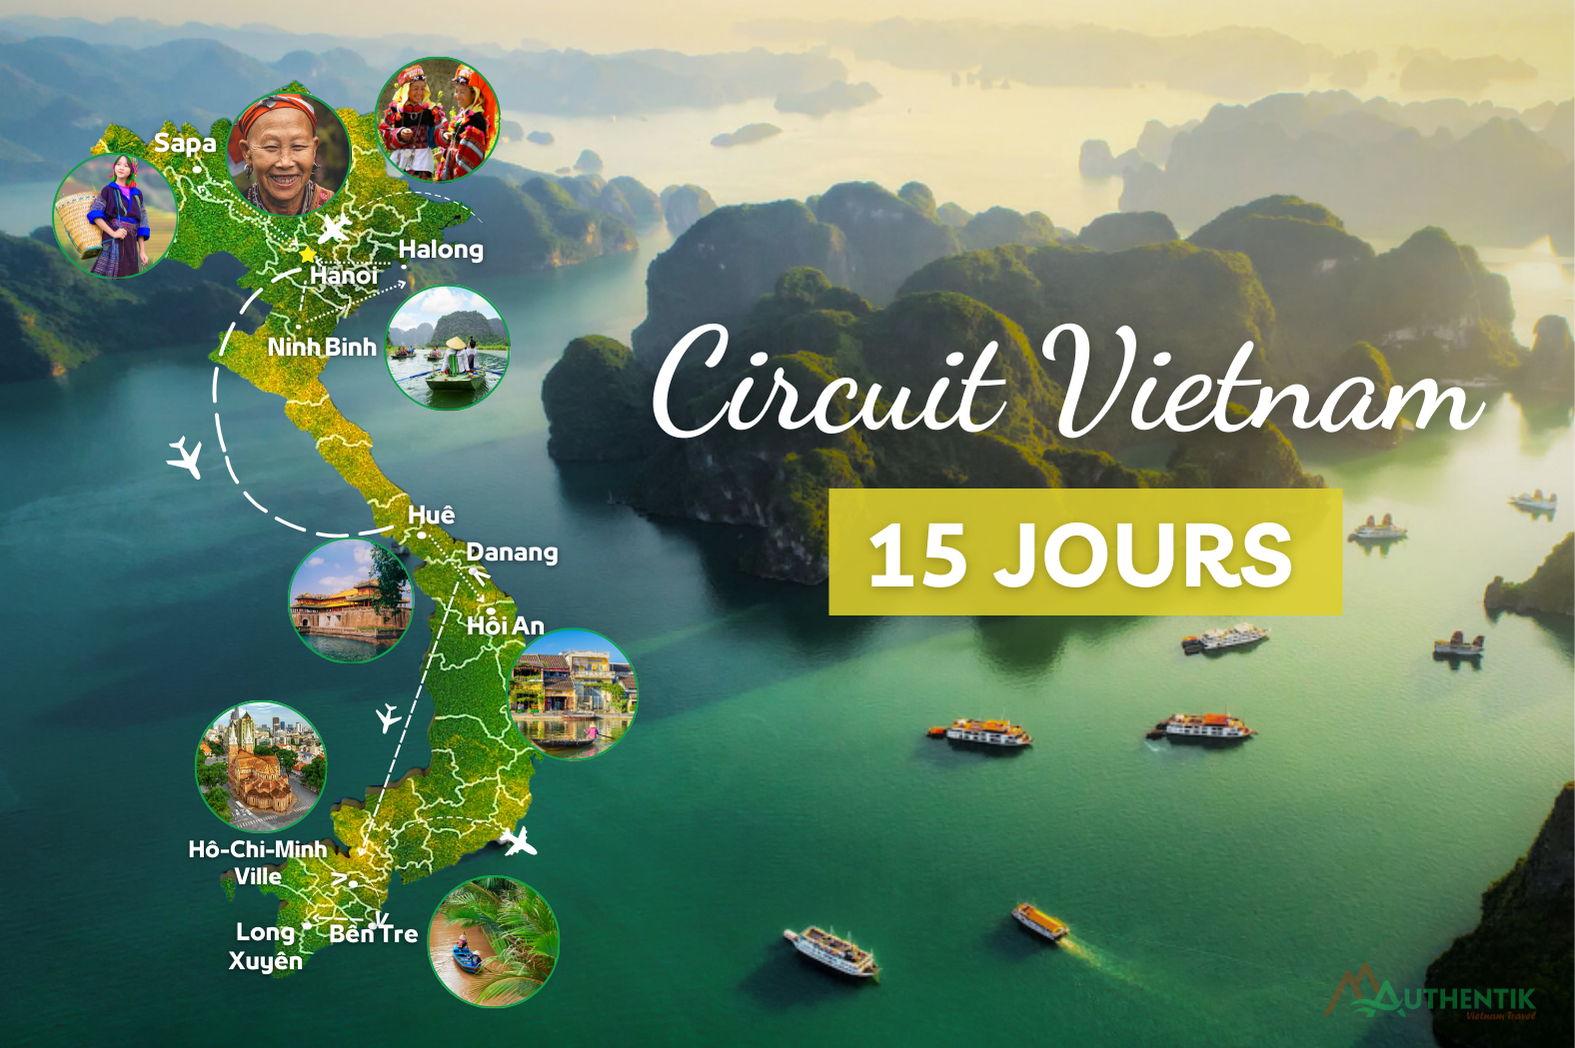  Circuit Vietnam en 15 jours: que faire et quel itinéraire idéal?